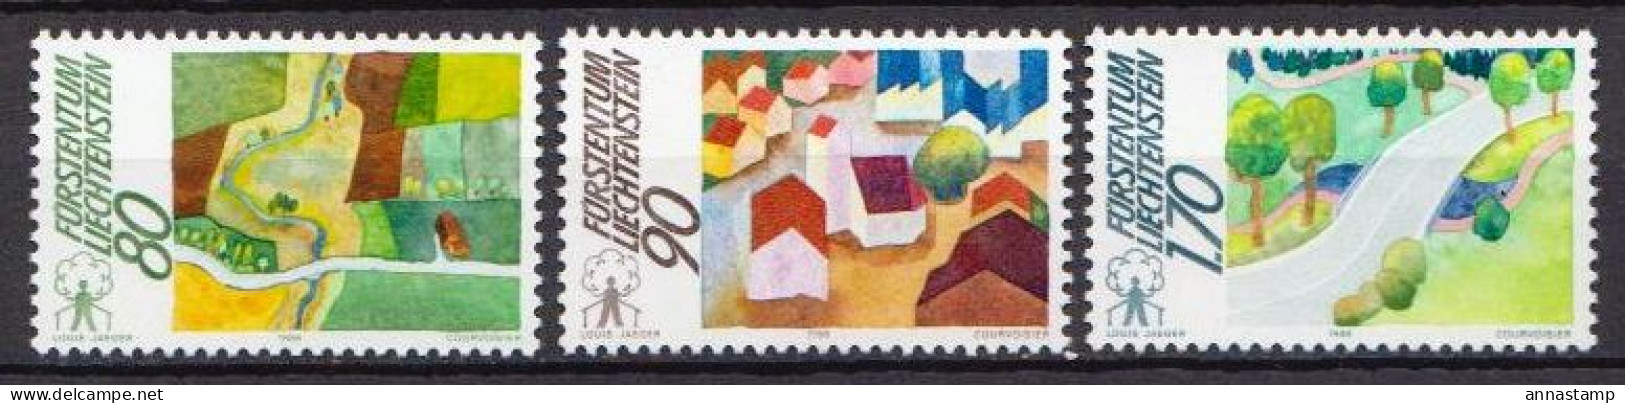 Liechtenstein MNH Set - Unused Stamps